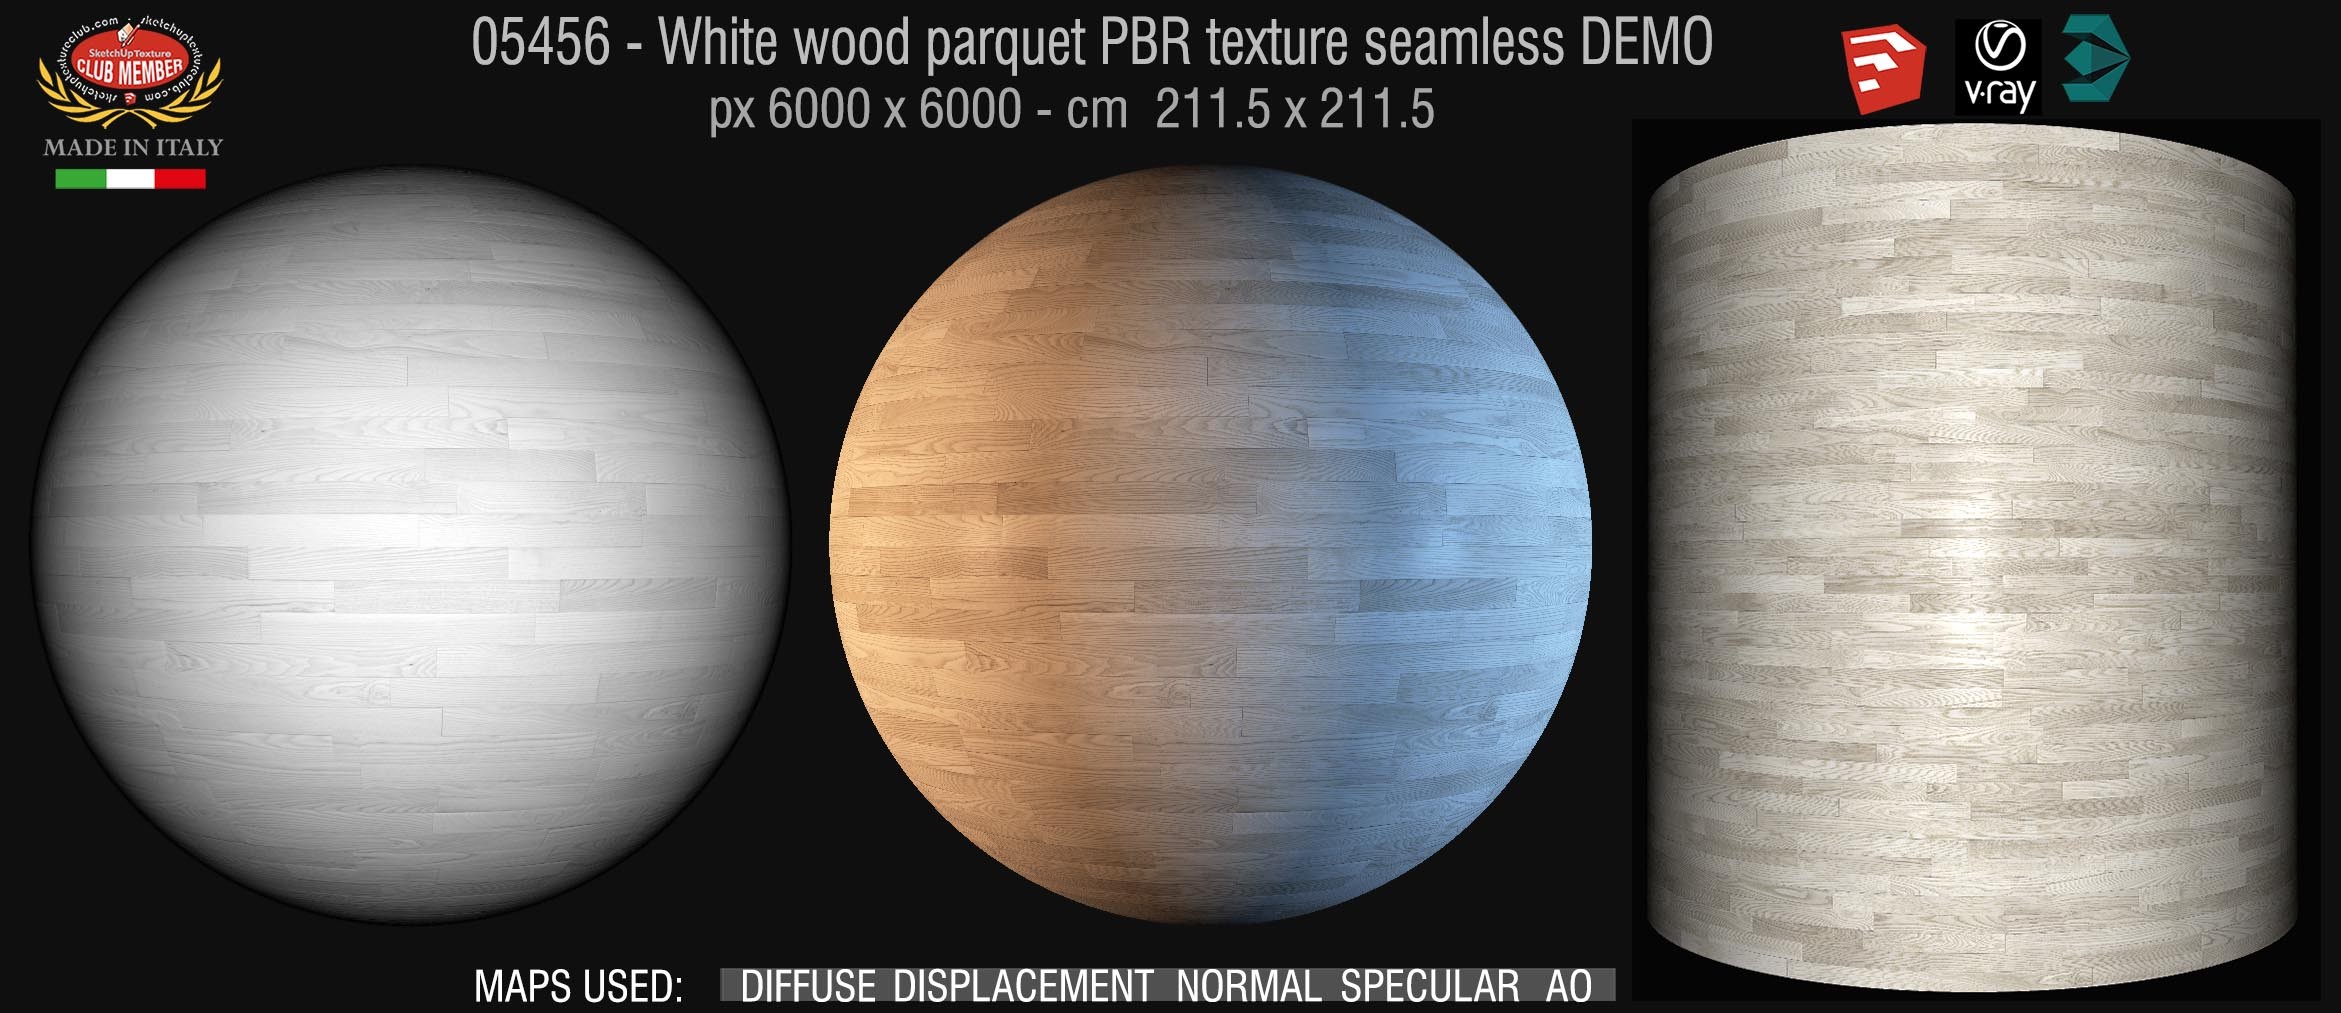 05456 white parquet PBR texture seamless DEMO